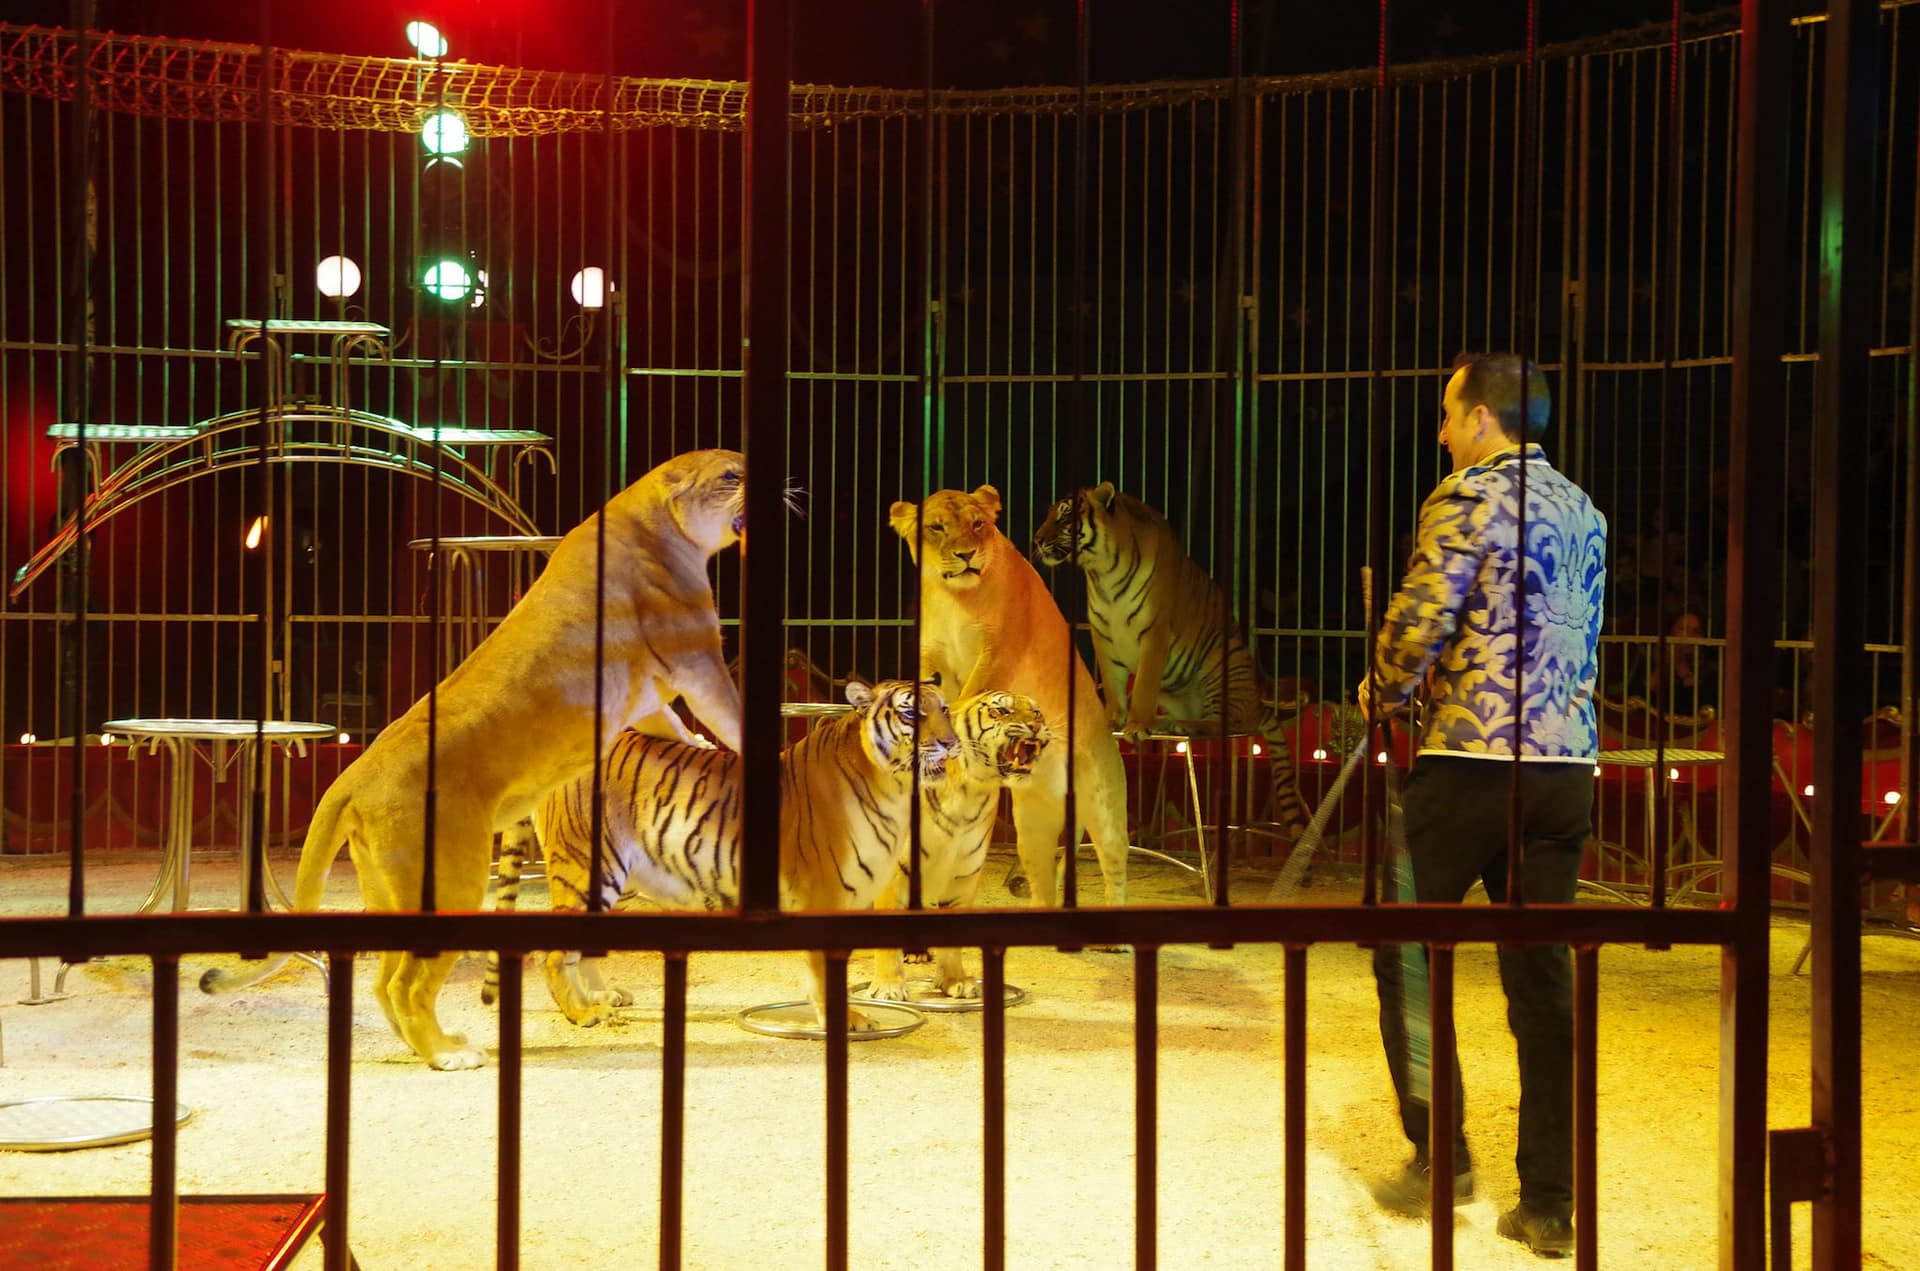 Pessac bannit les cirques avec animaux sauvages